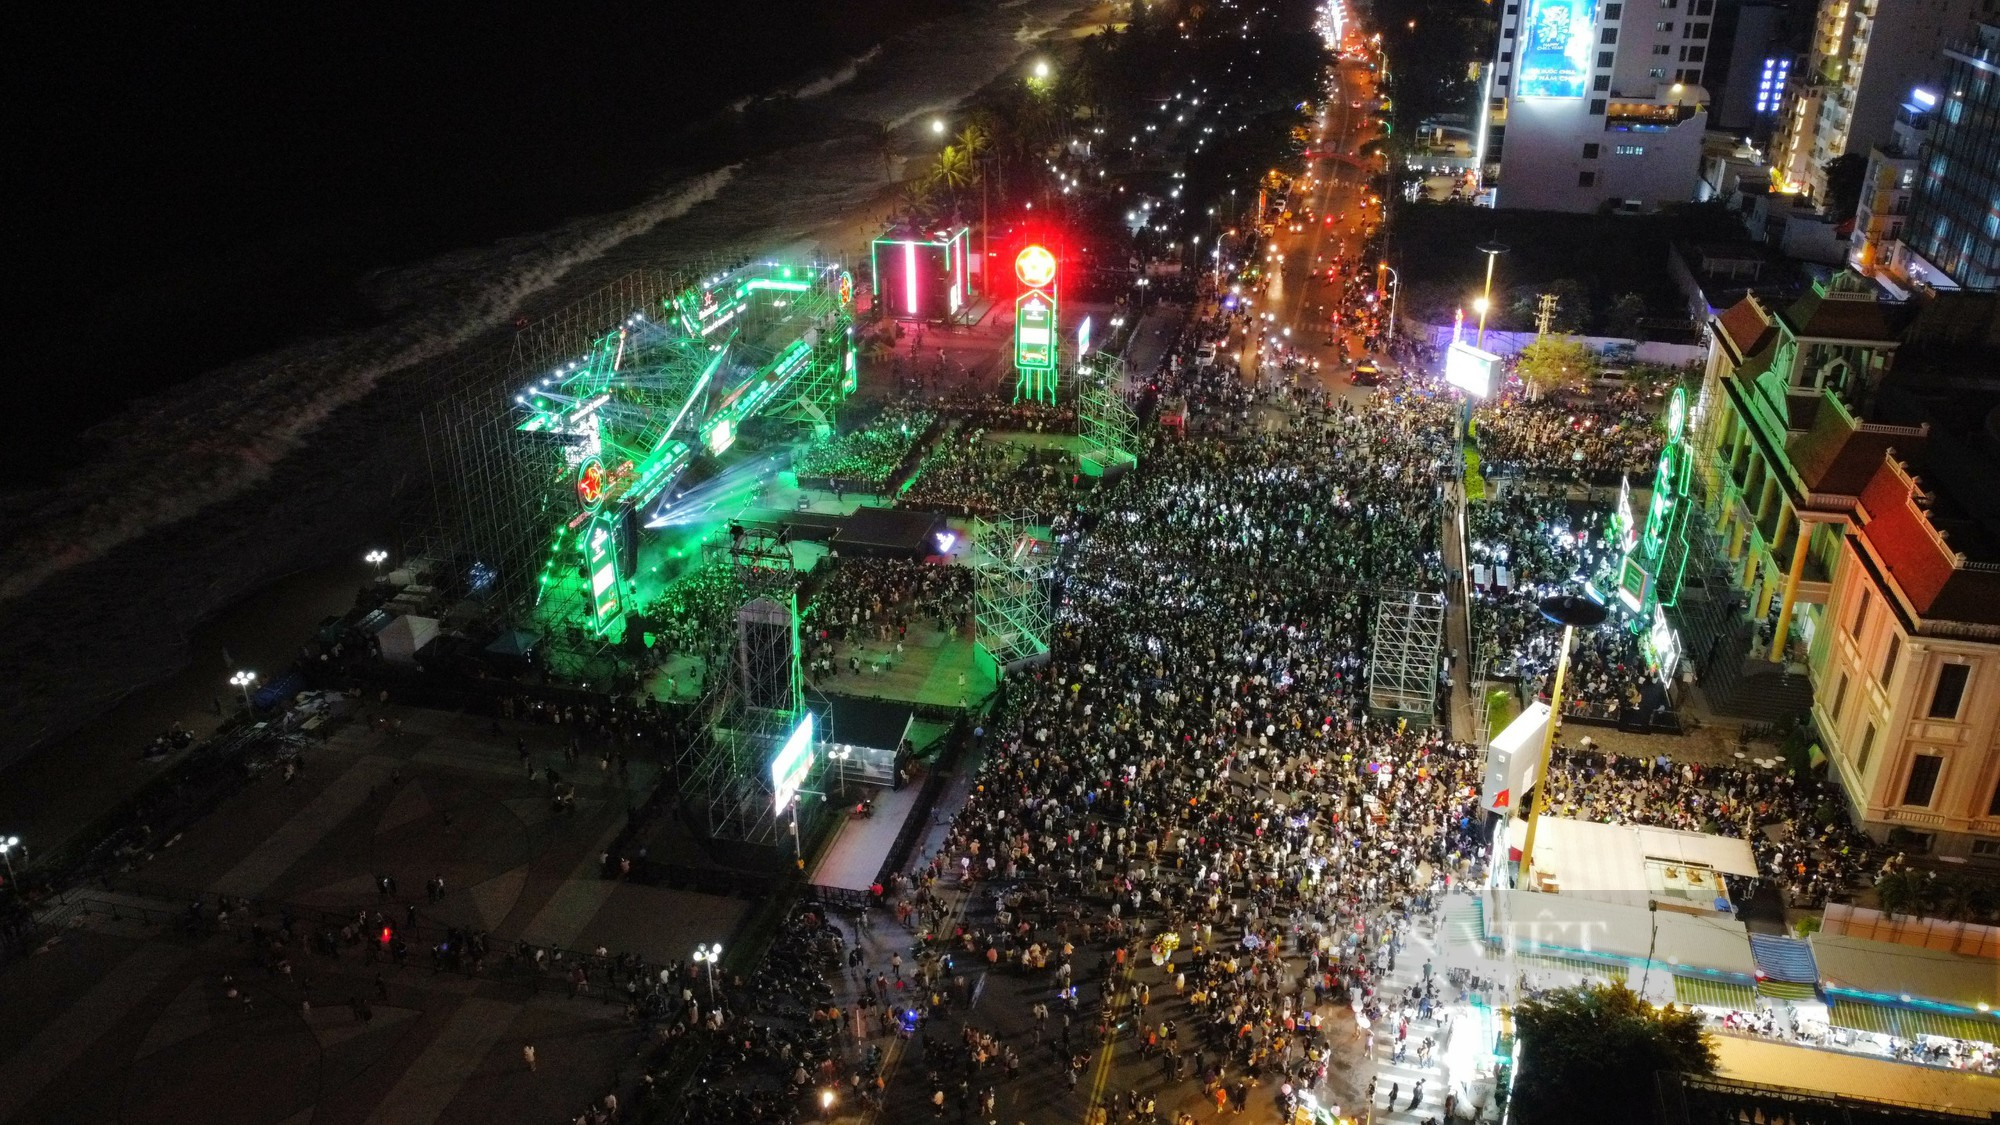 Cận cảnh: Ngập tràn người dân đón Tết tại thành phố biển Nha Trang - Ảnh 2.